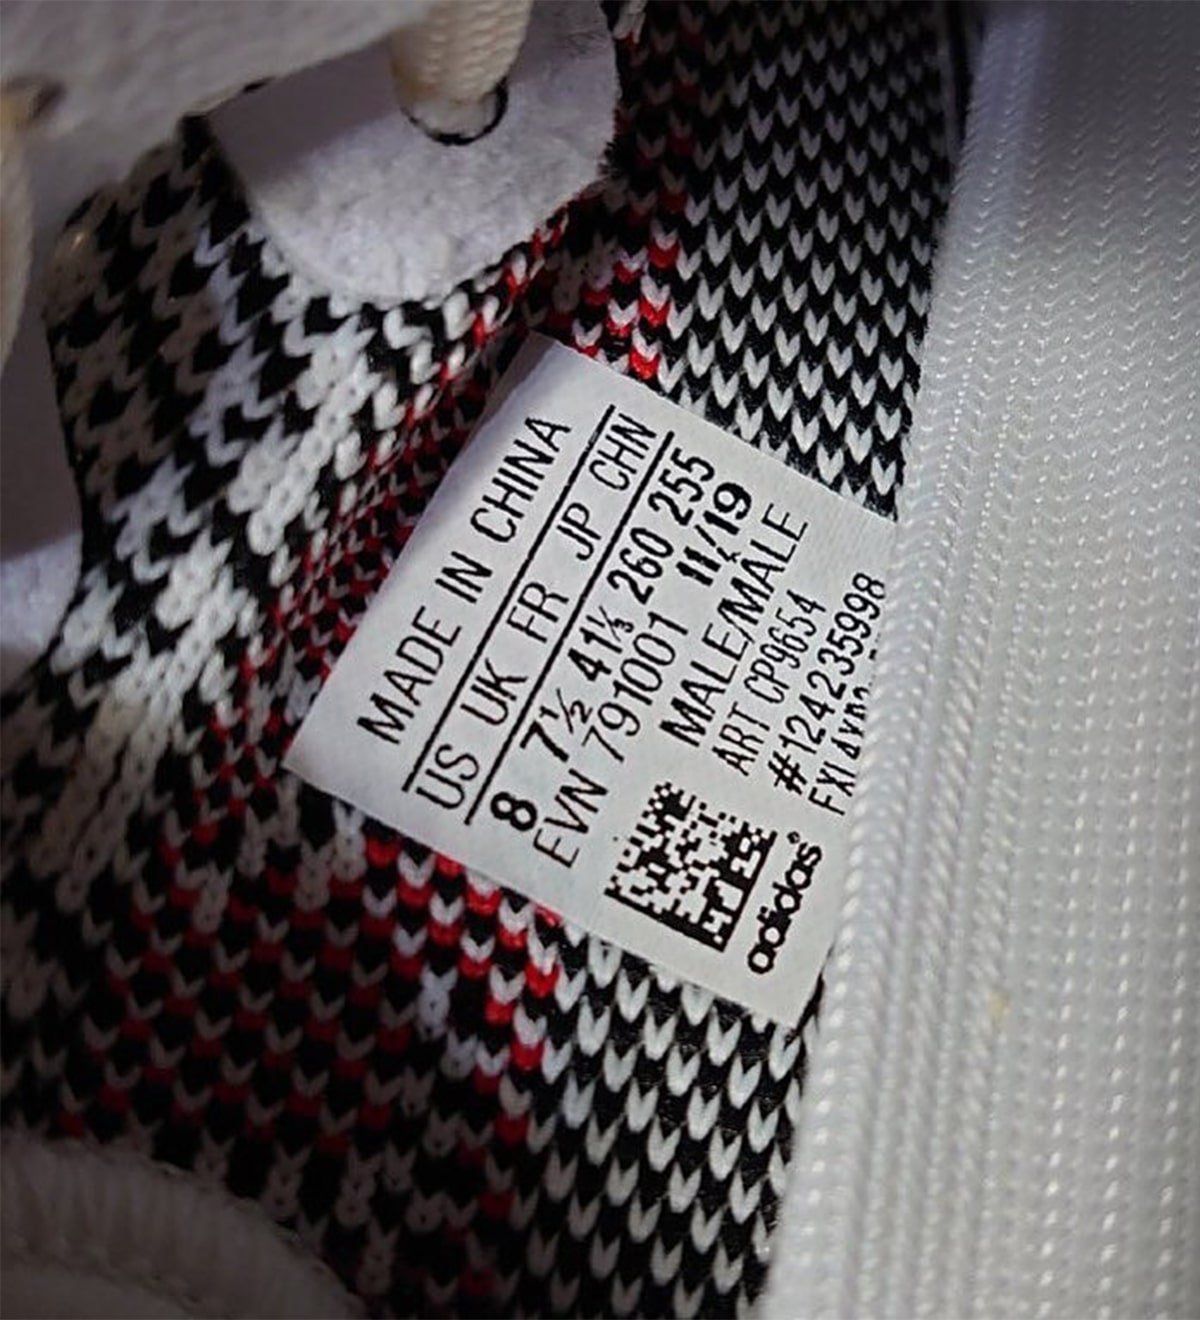 adidas yeezy boost 350 v2 zebra restock 2018